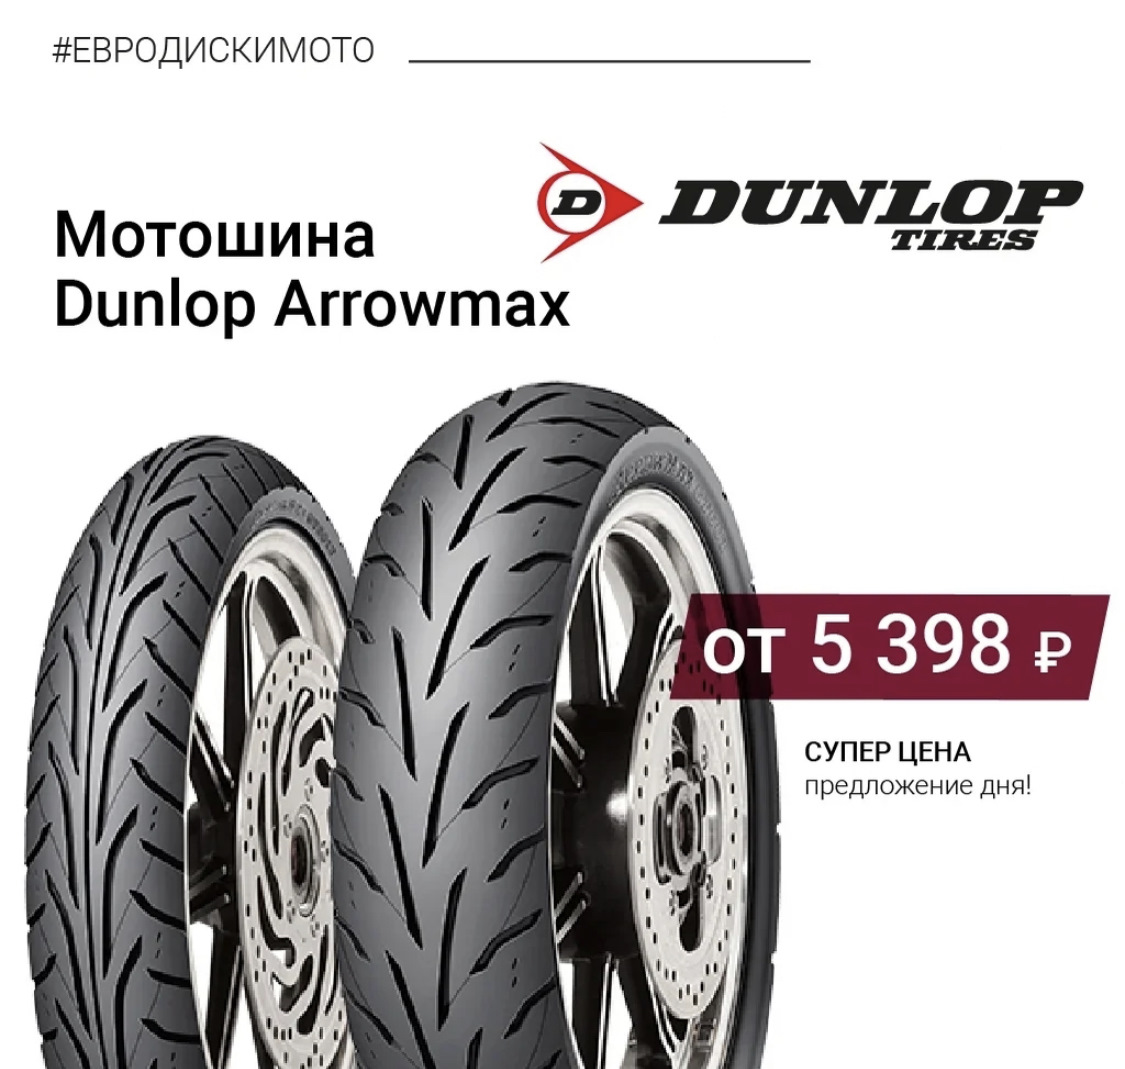 Сайт евродиски интернет магазин. Dunlop Arrowmax gt501. Dunlop Arrowmax. Euro-diski. Arrowmax as-13.